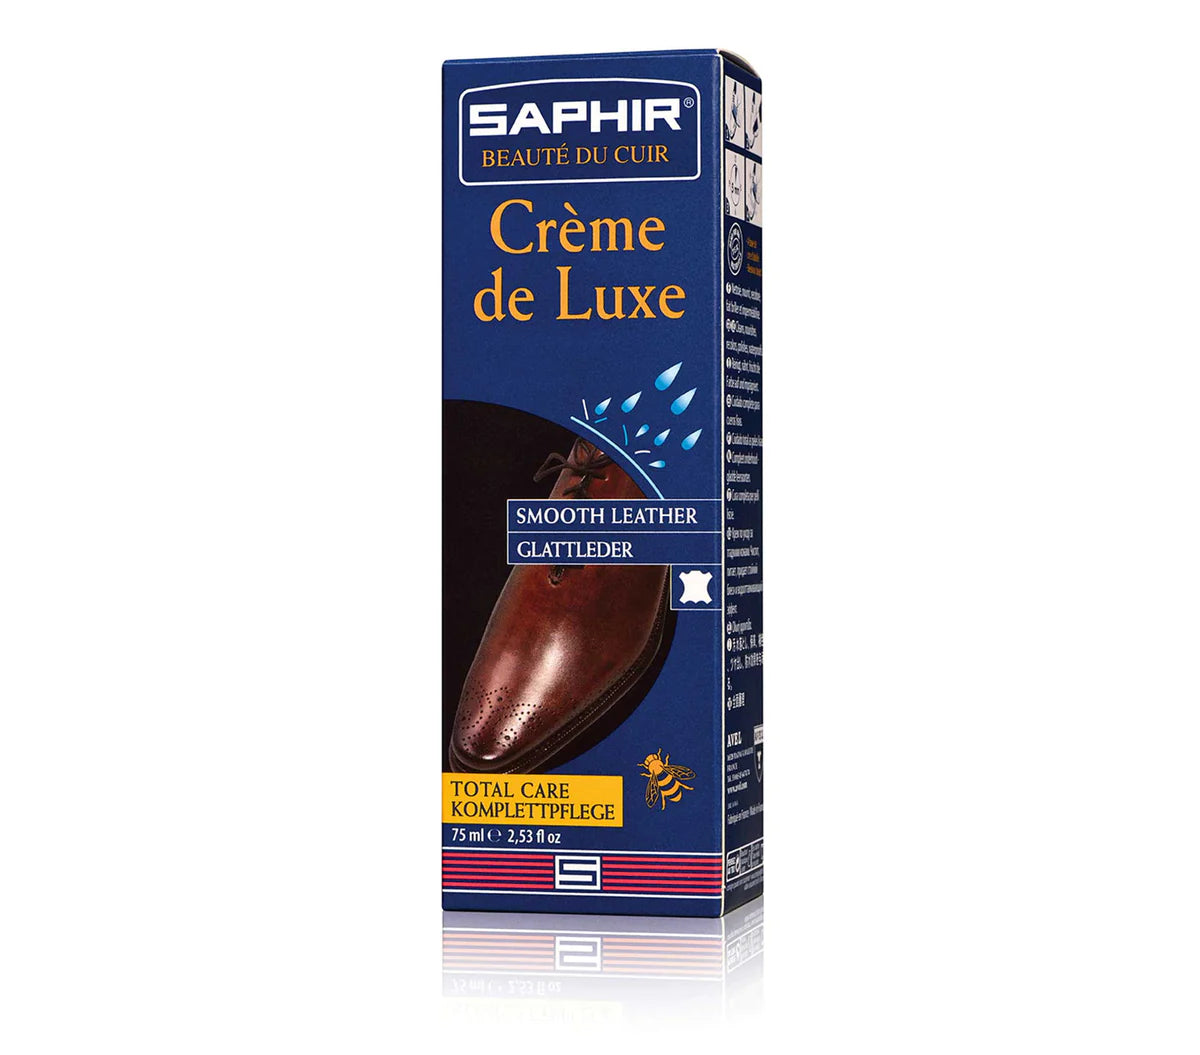 Saphir Creme de Luxe